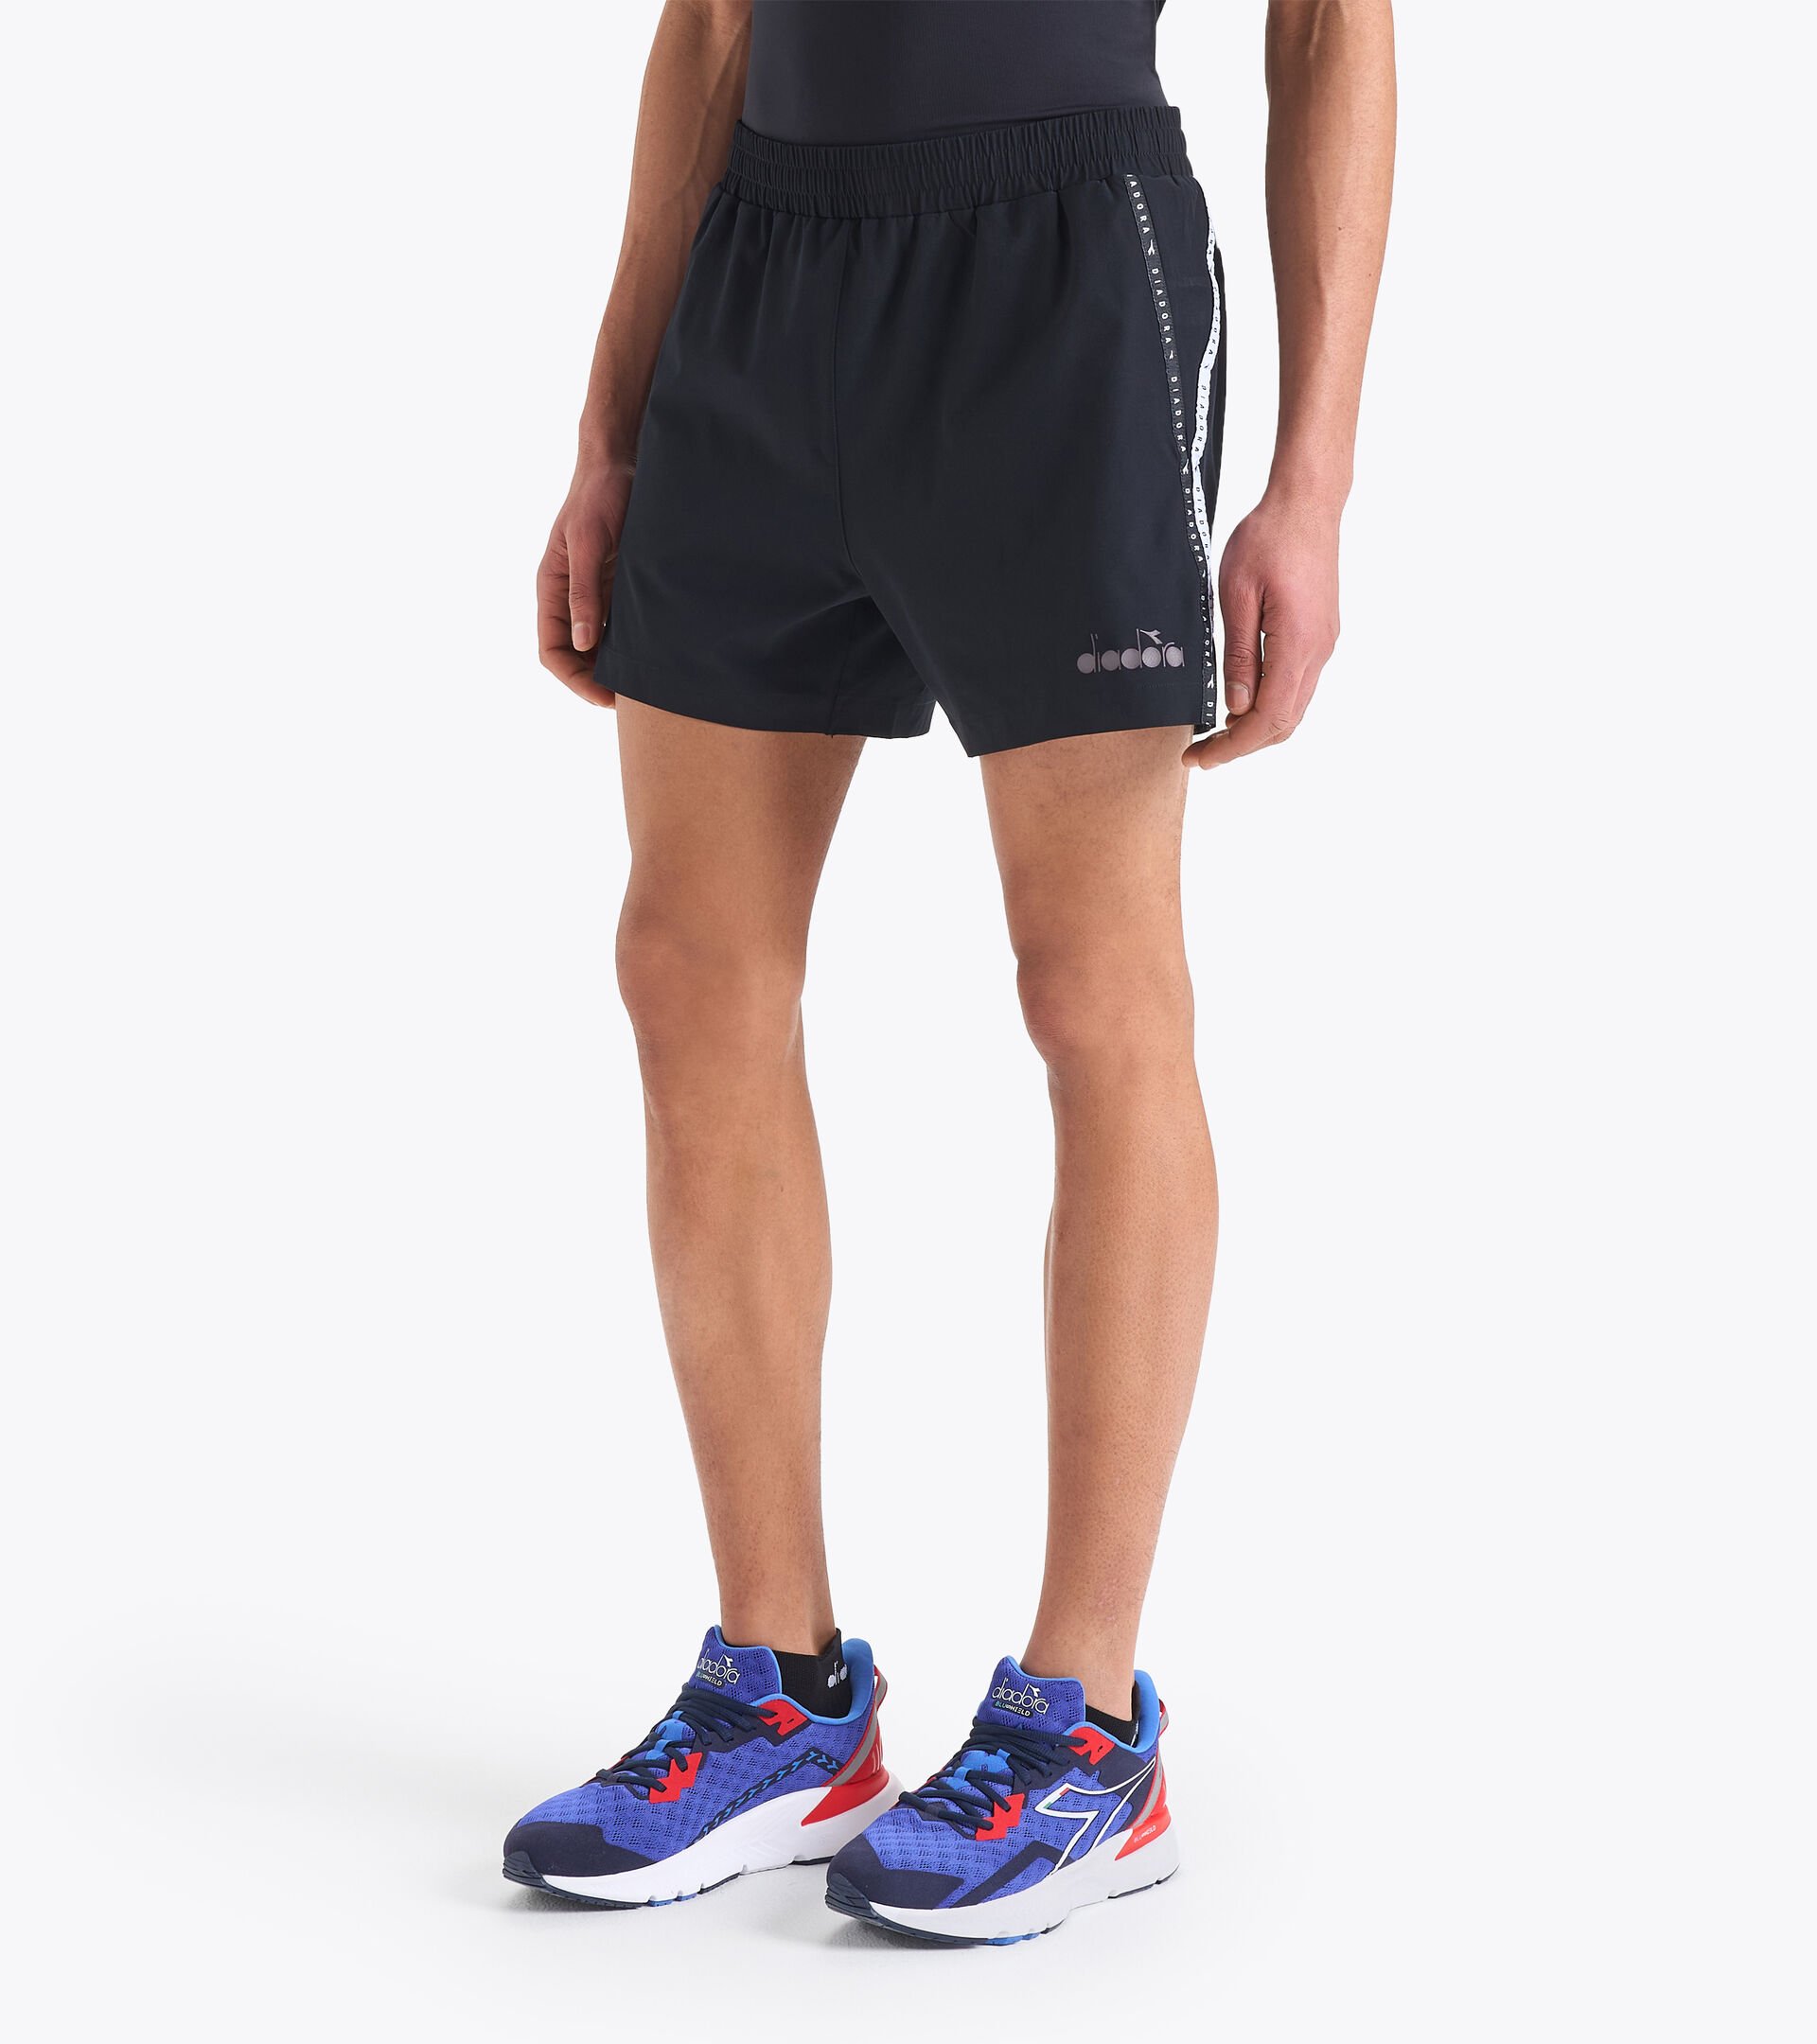 Pantalones cortos deportivos para Hombre - Diadora Tienda Online